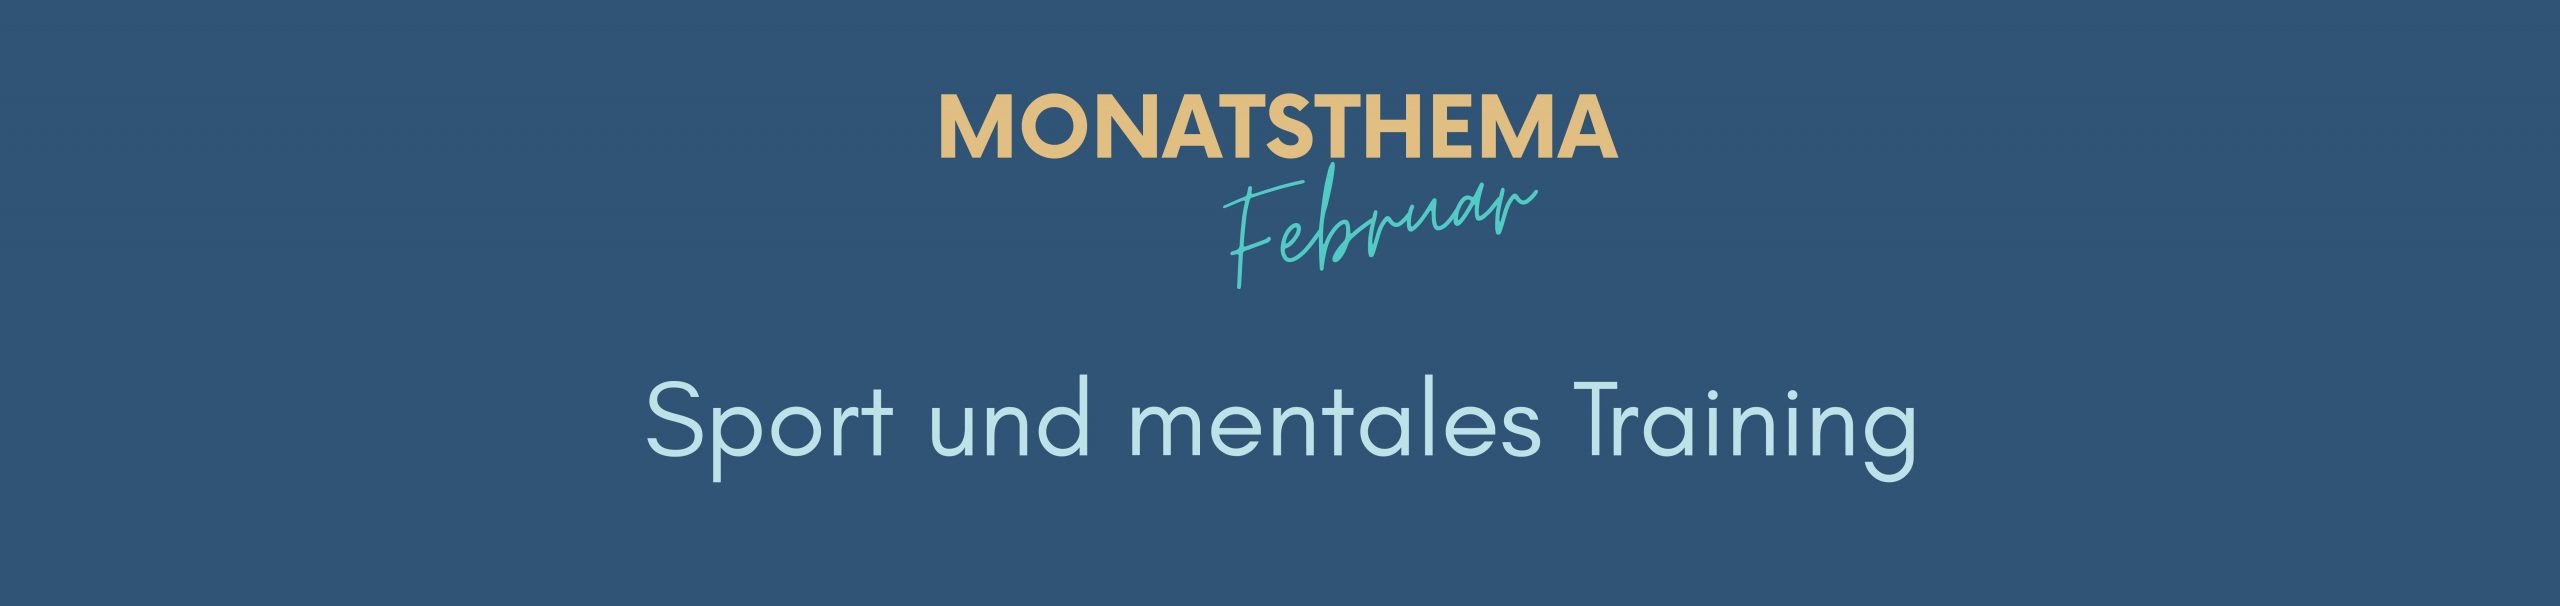 blauer Hintergrund mit Text: Monatsthema Februar, Sport und Mentales Training